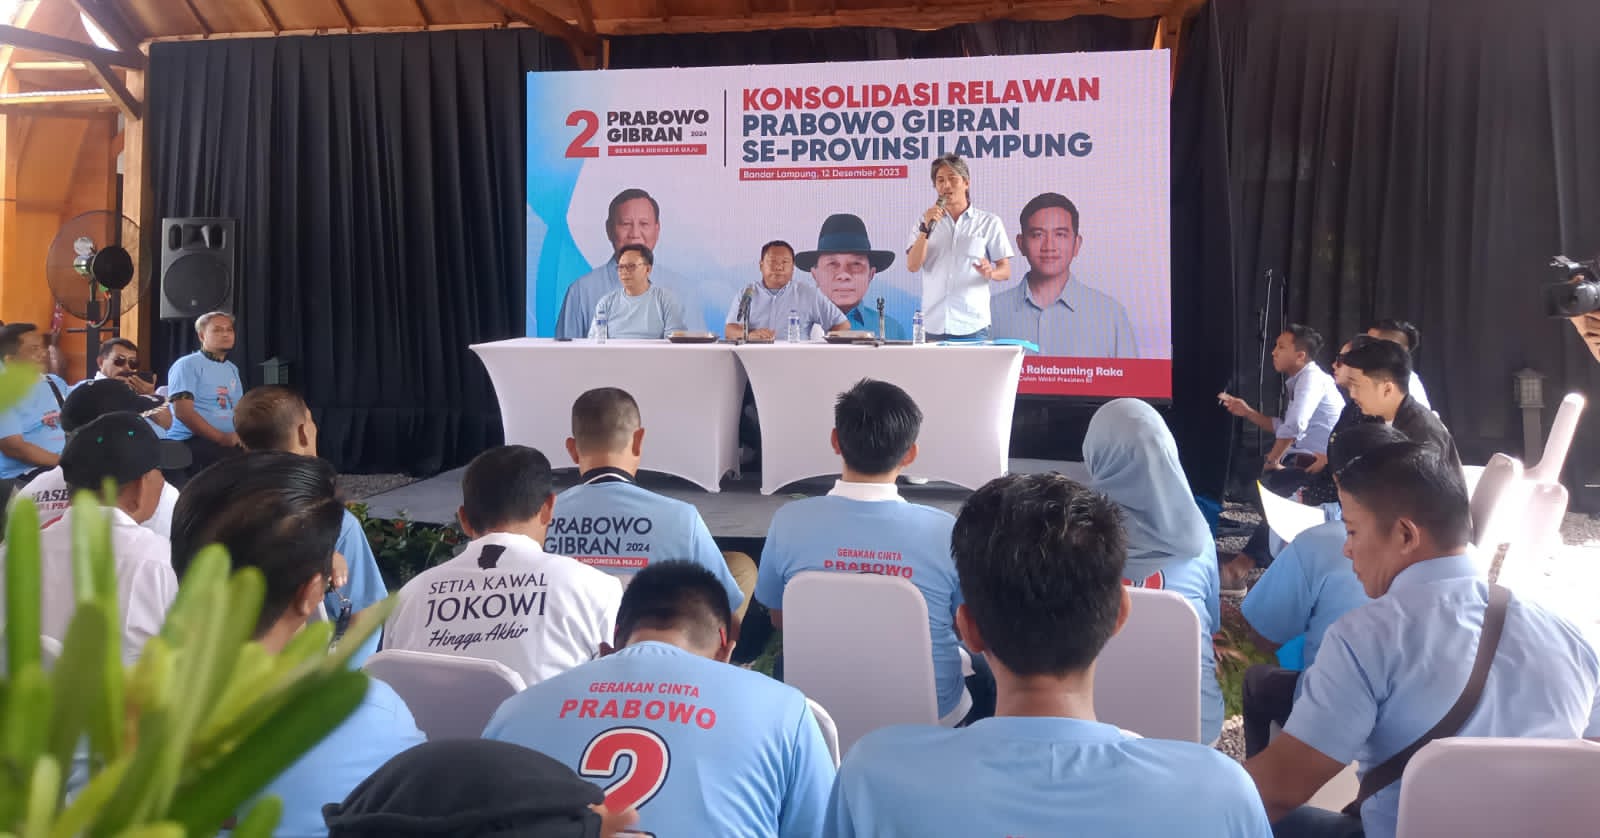 Gelar Konsolidasi, Relawan Prabowo Gibran di Lampung Optimis Menang Satu Putaran